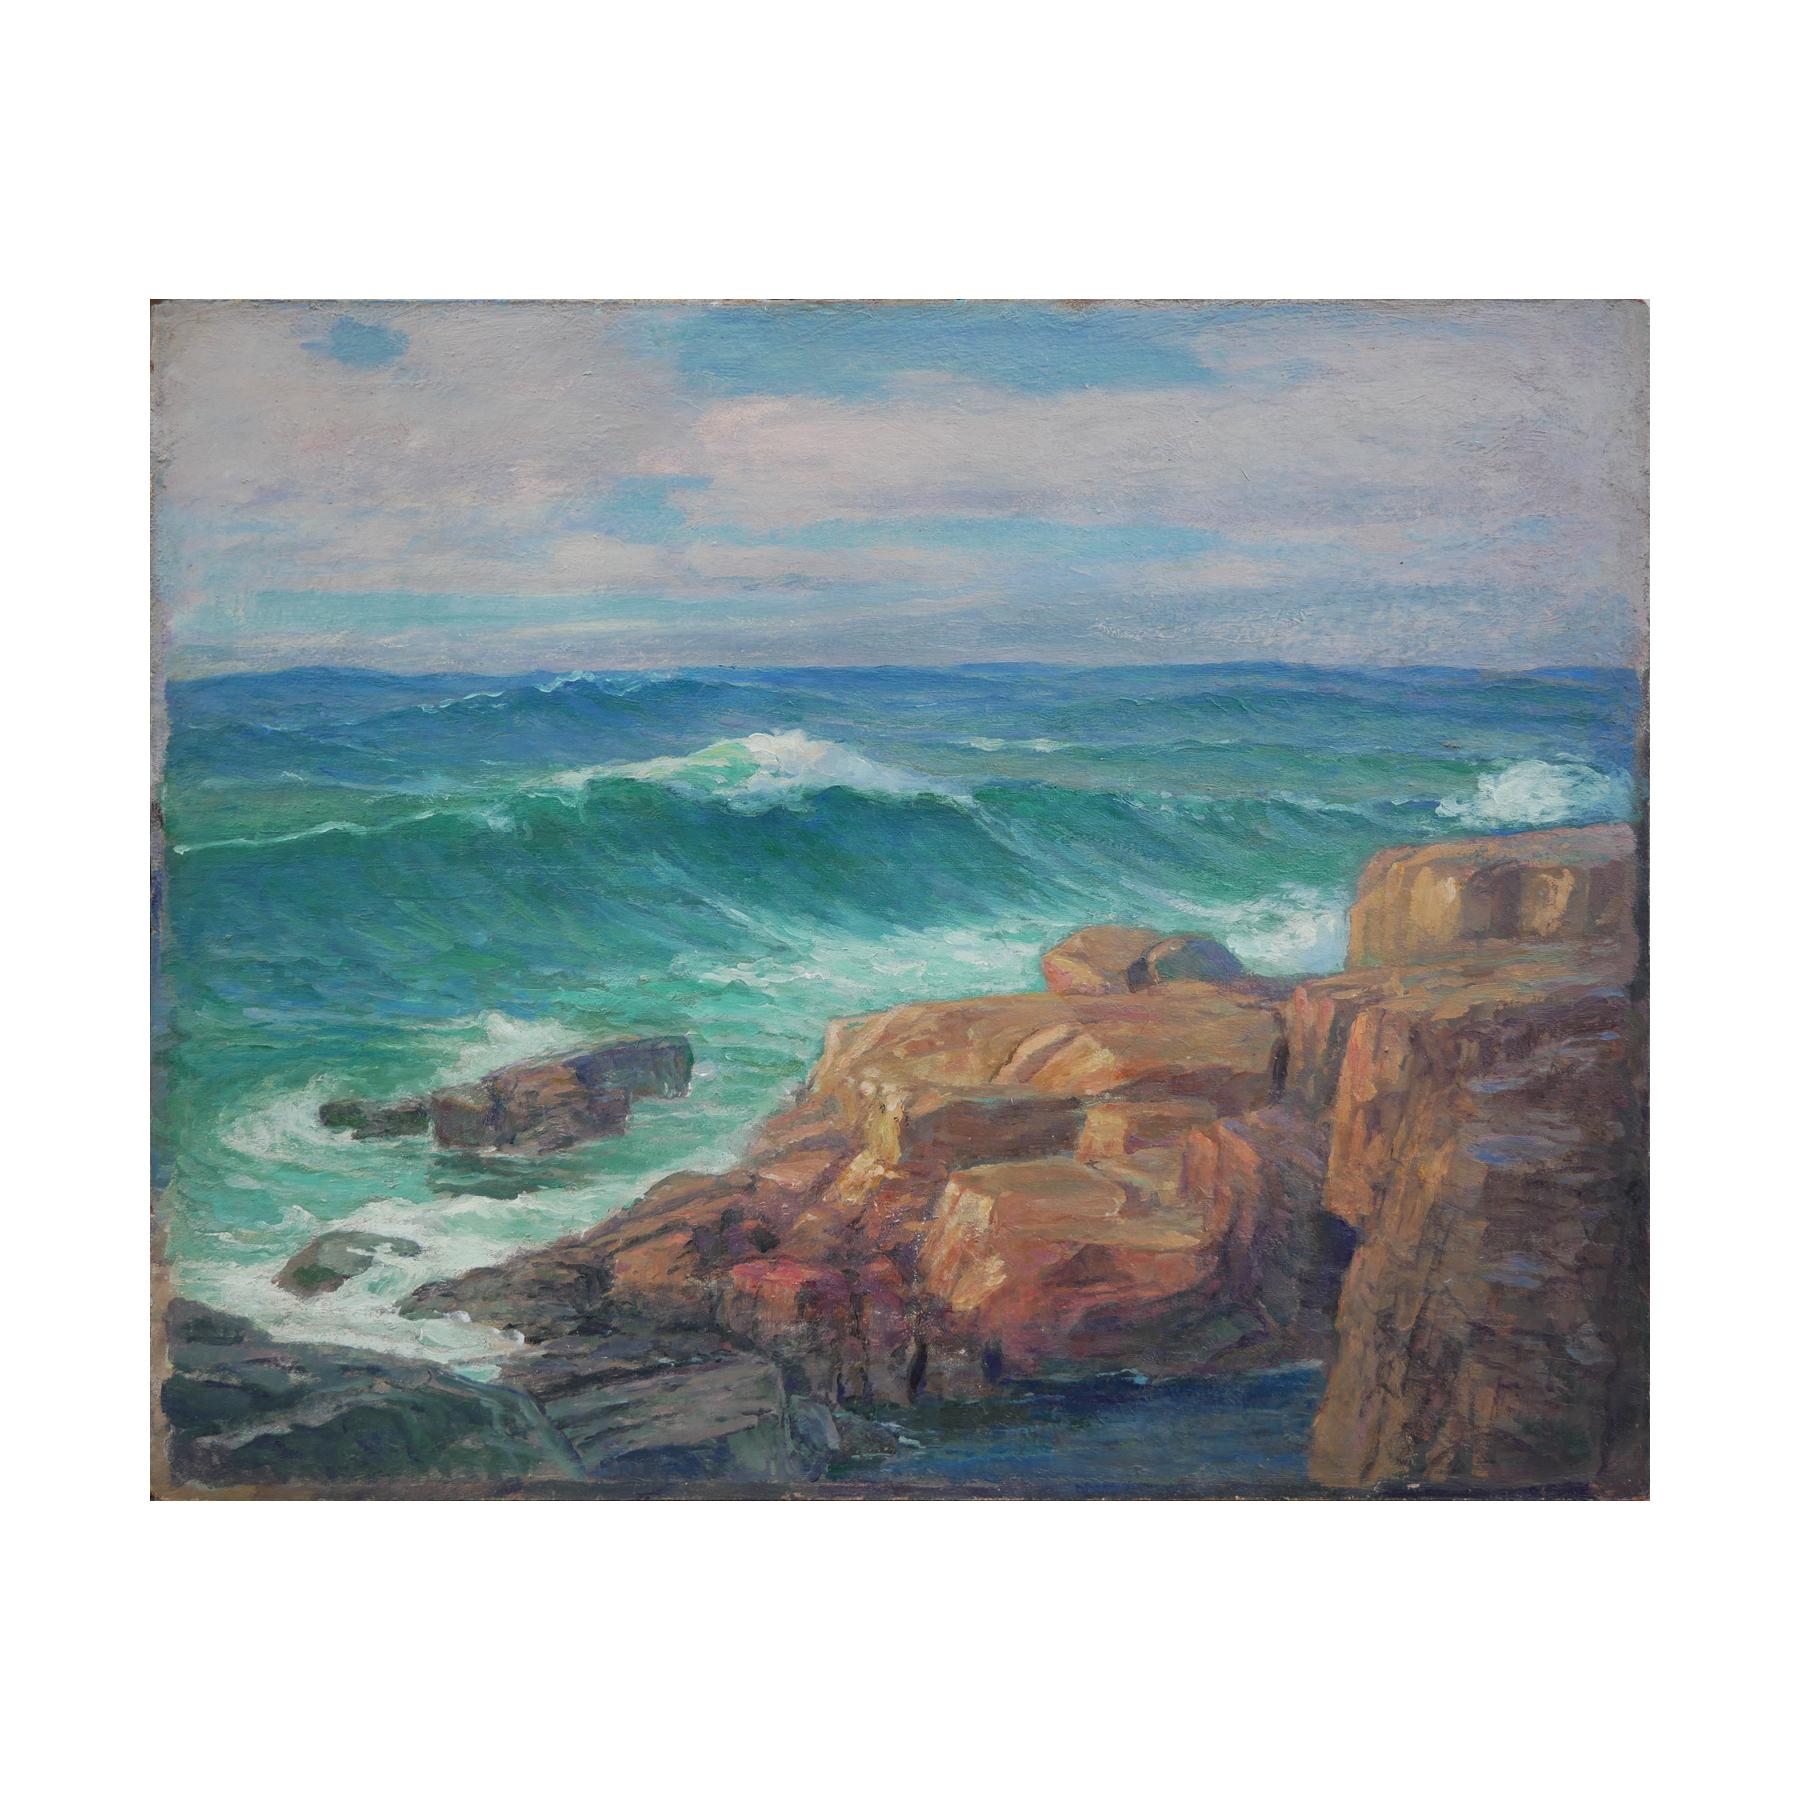 Teal und Blau getönte abstrakte impressionistische Meereslandschaft – Painting von Unknown